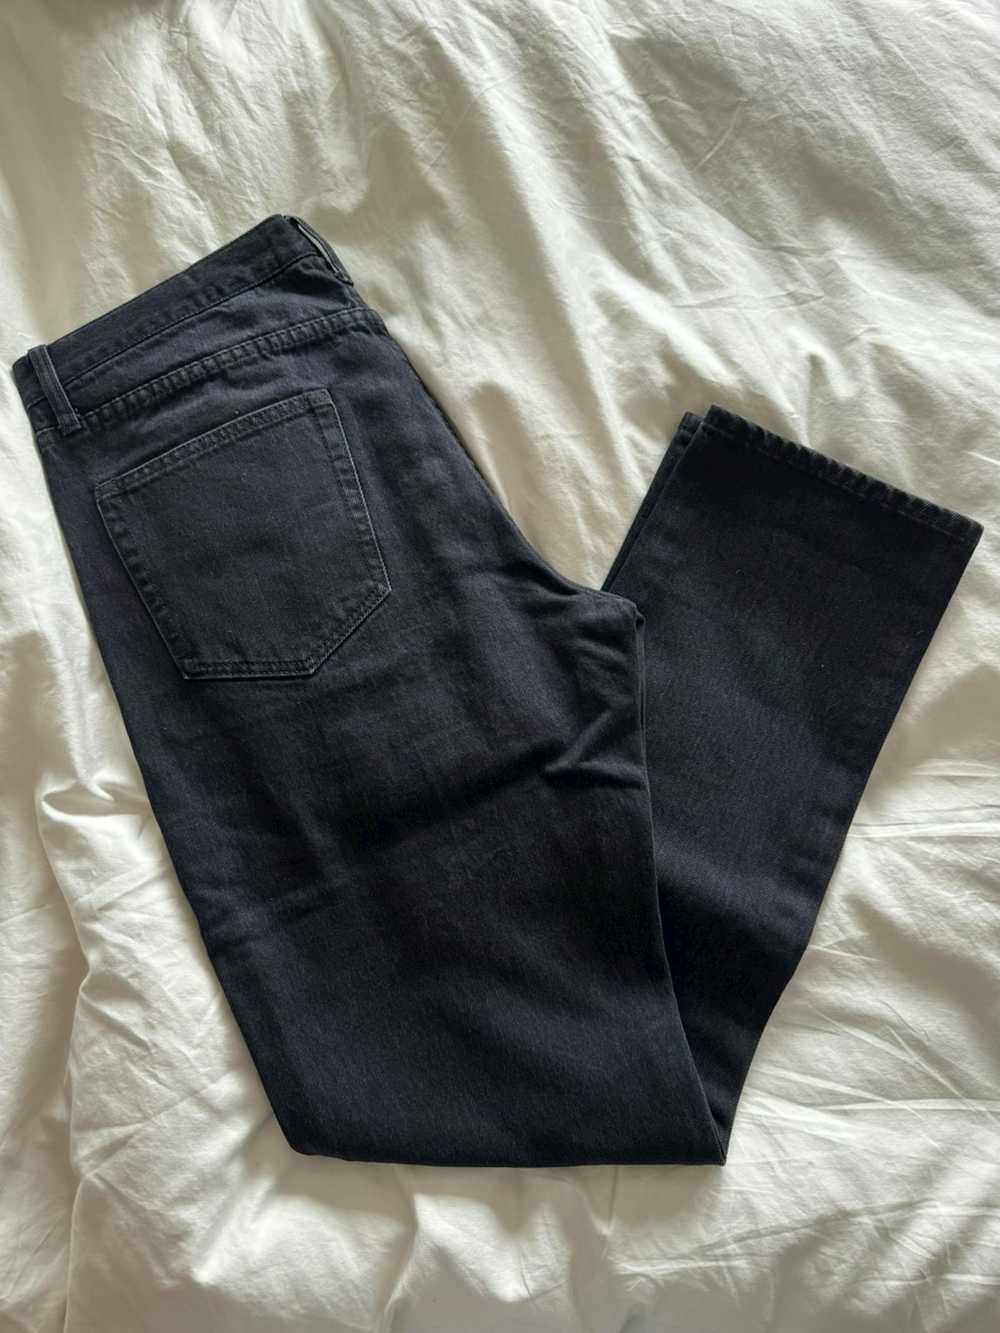 Supreme Supreme Washed Black Jeans - image 2